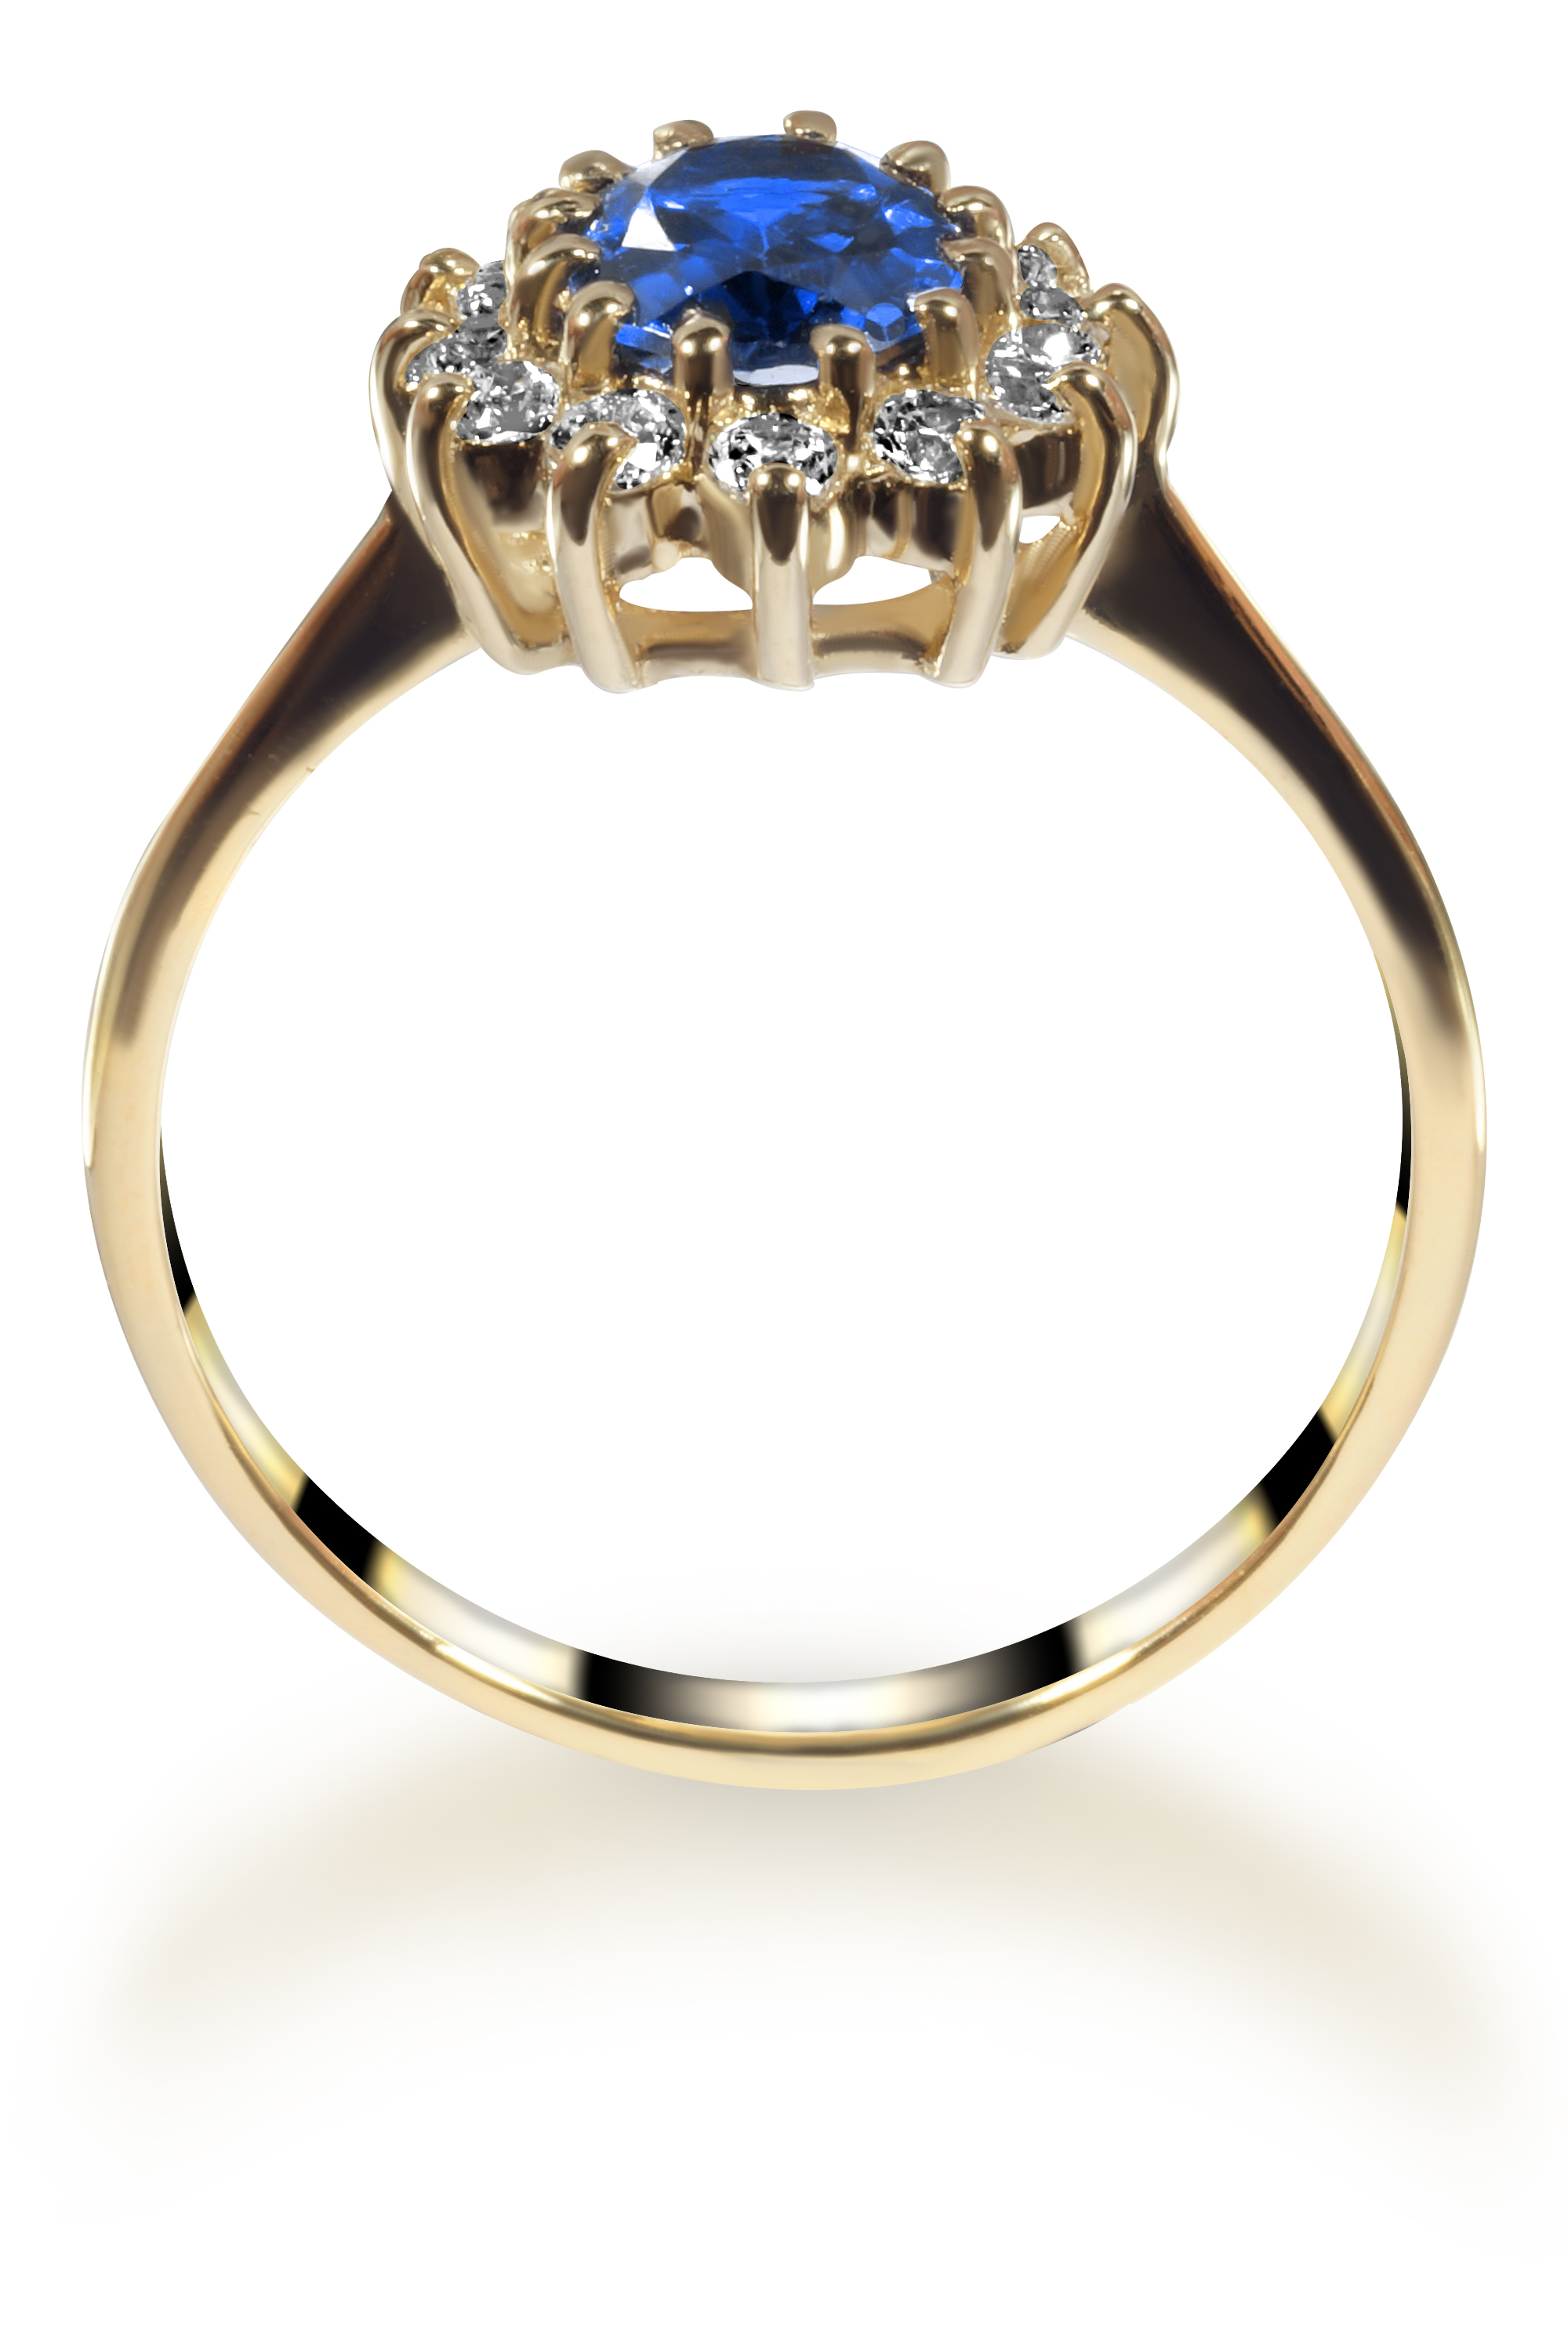 Pierścionek z szafirem i diamentami. Model pierścionka Księżnej Diany i Kate Middleton